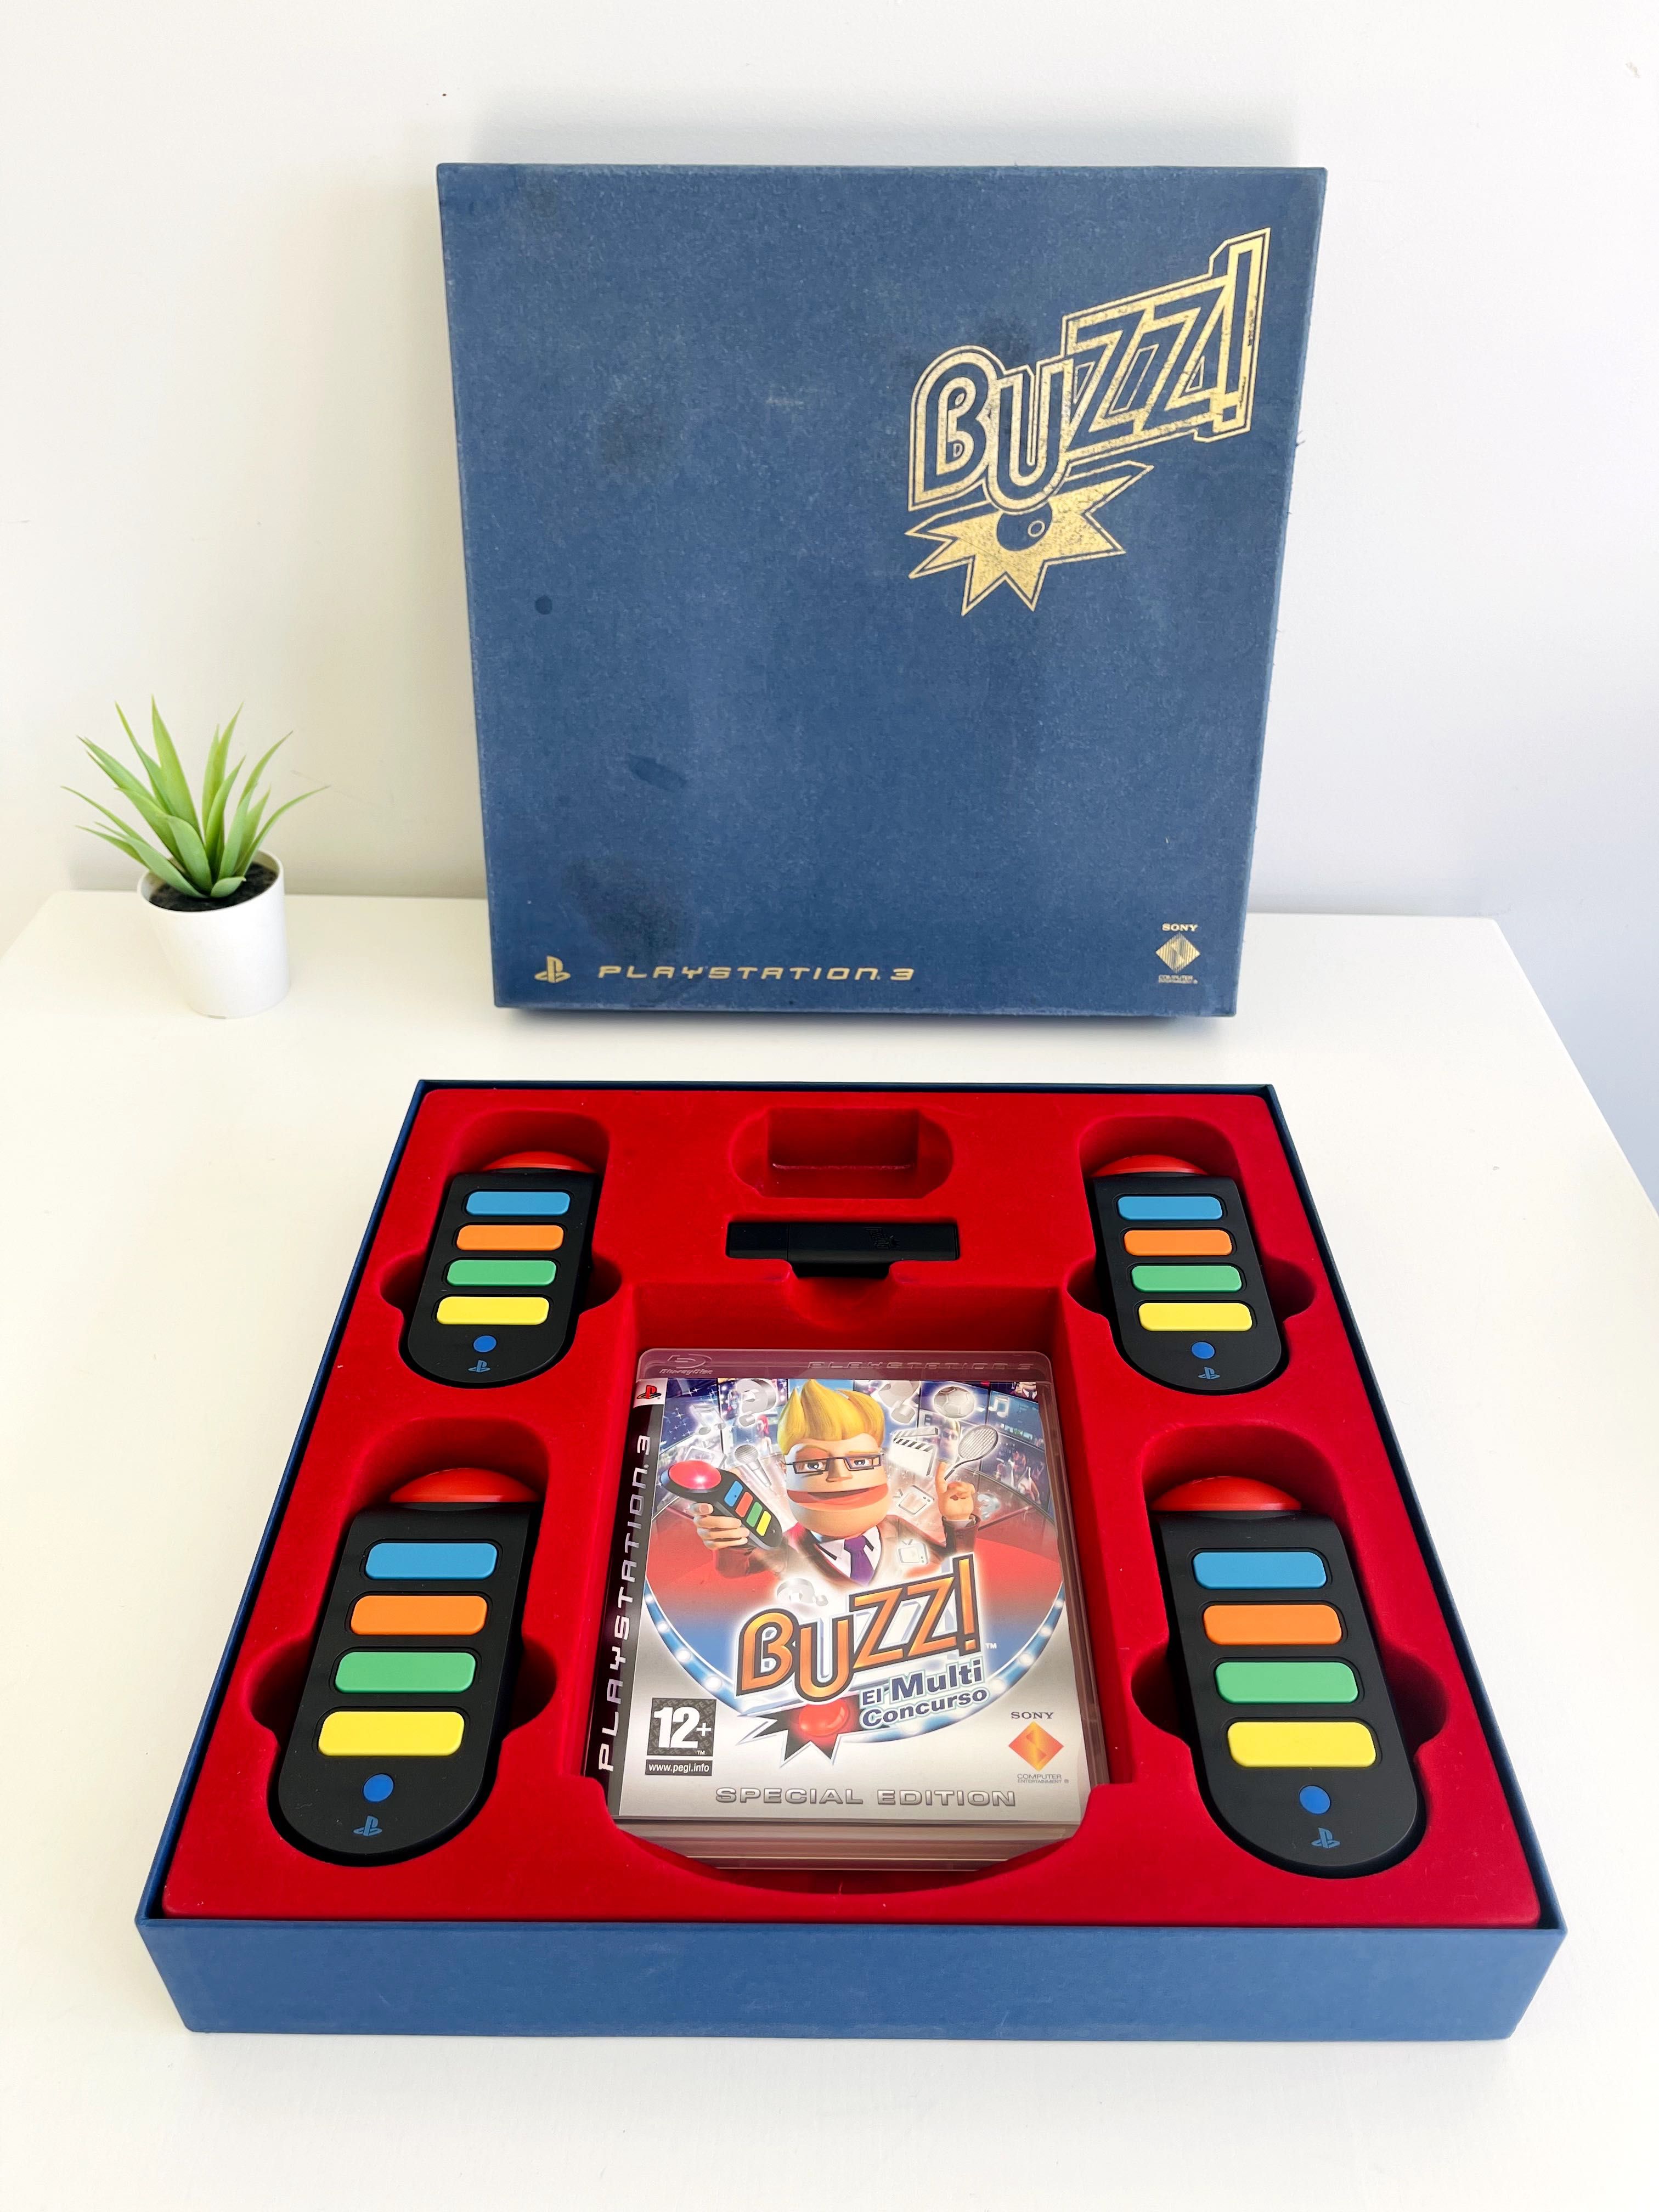 Pack Campainhas Buzz PS3 - com caixa